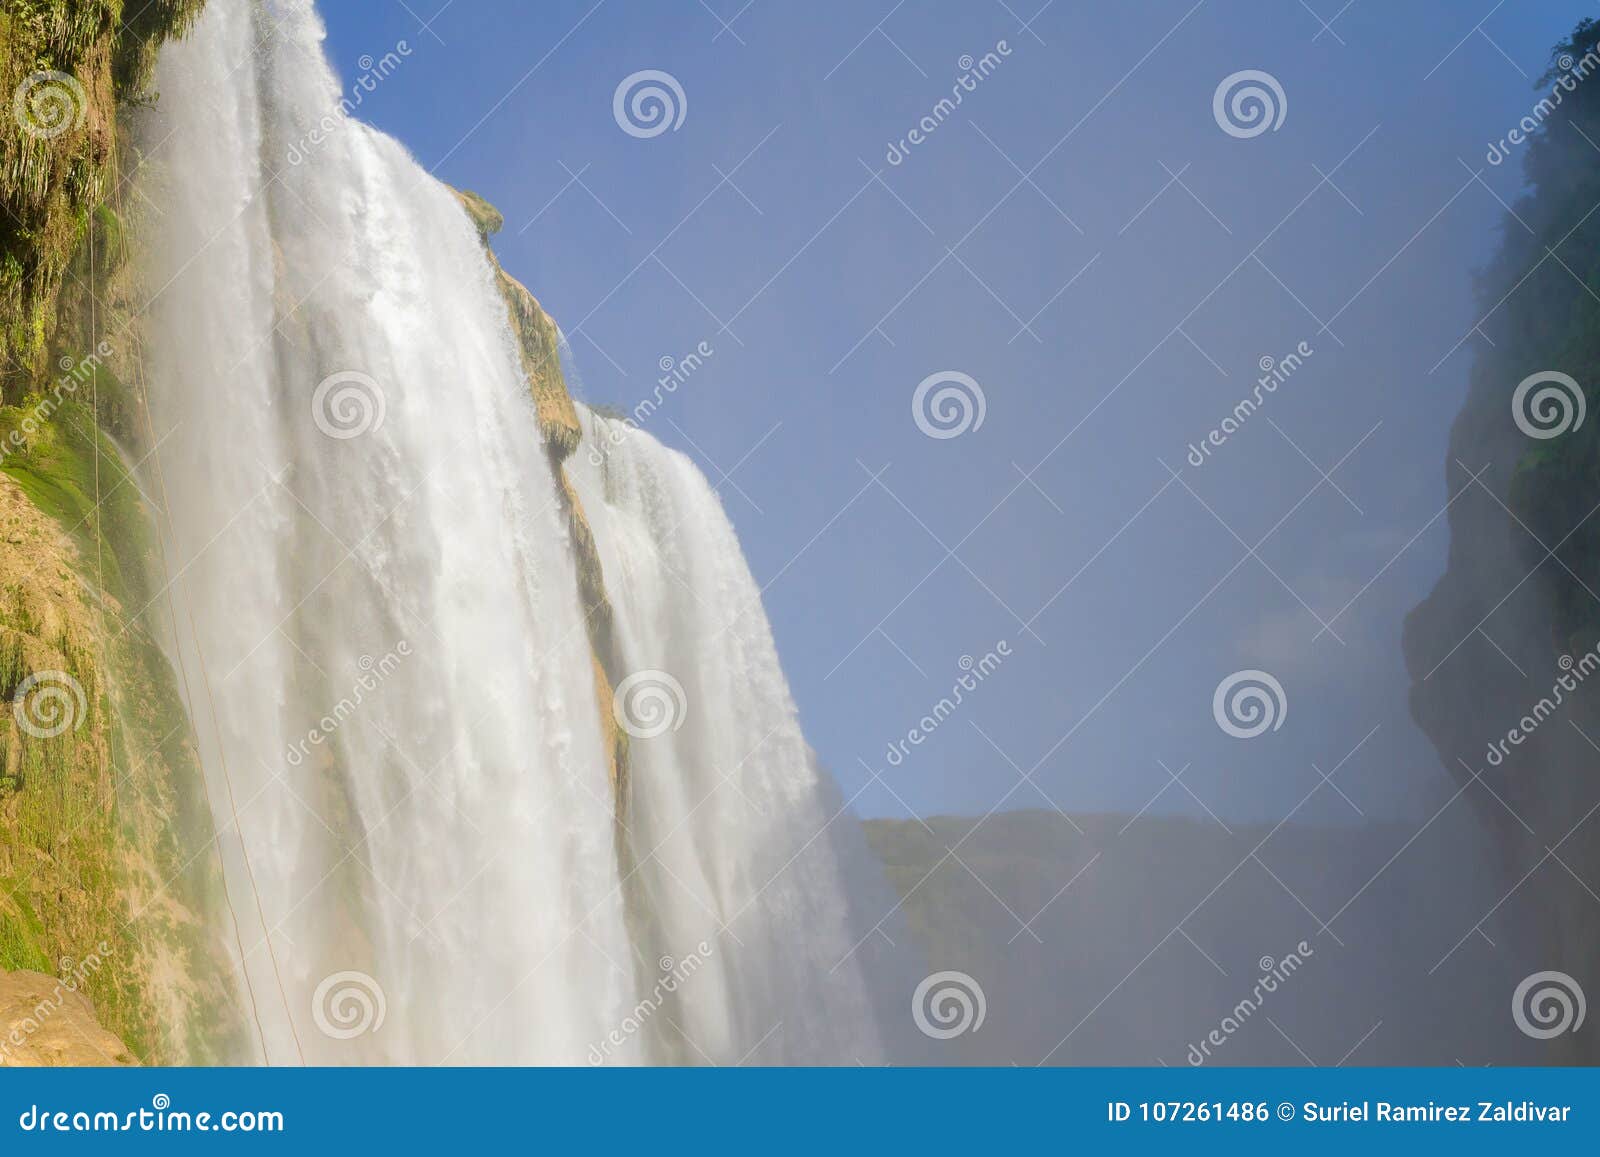 cascada tamul - waterfall at tamul